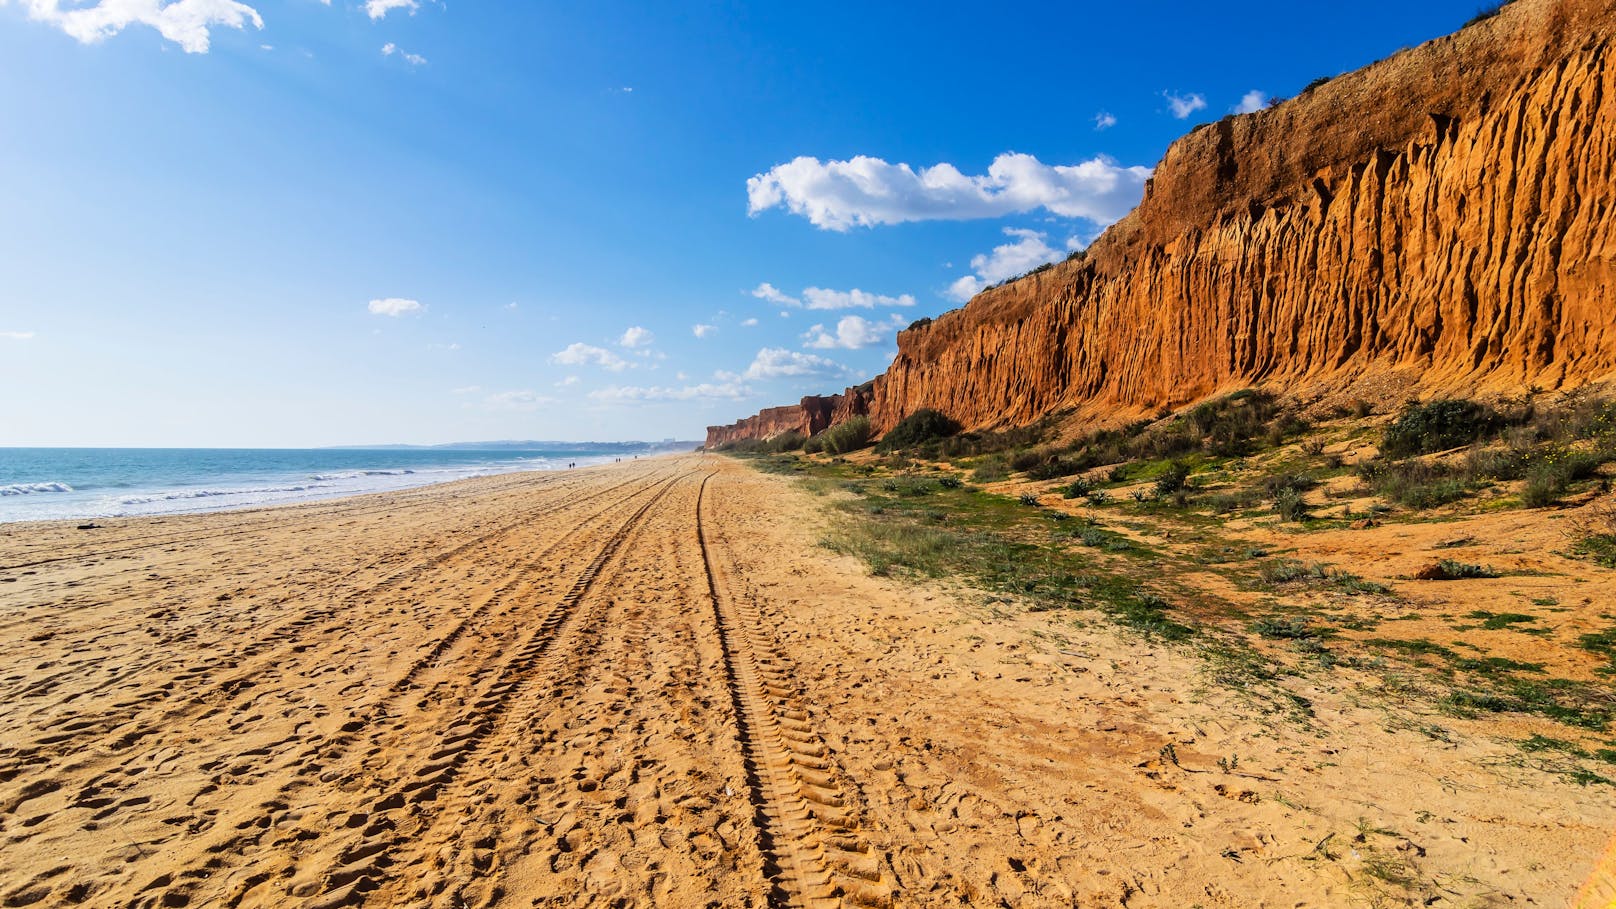 Beeindruckende Klippen, goldglitzernder Sand und blaues Wasser - das ist der Praia da Falésia.